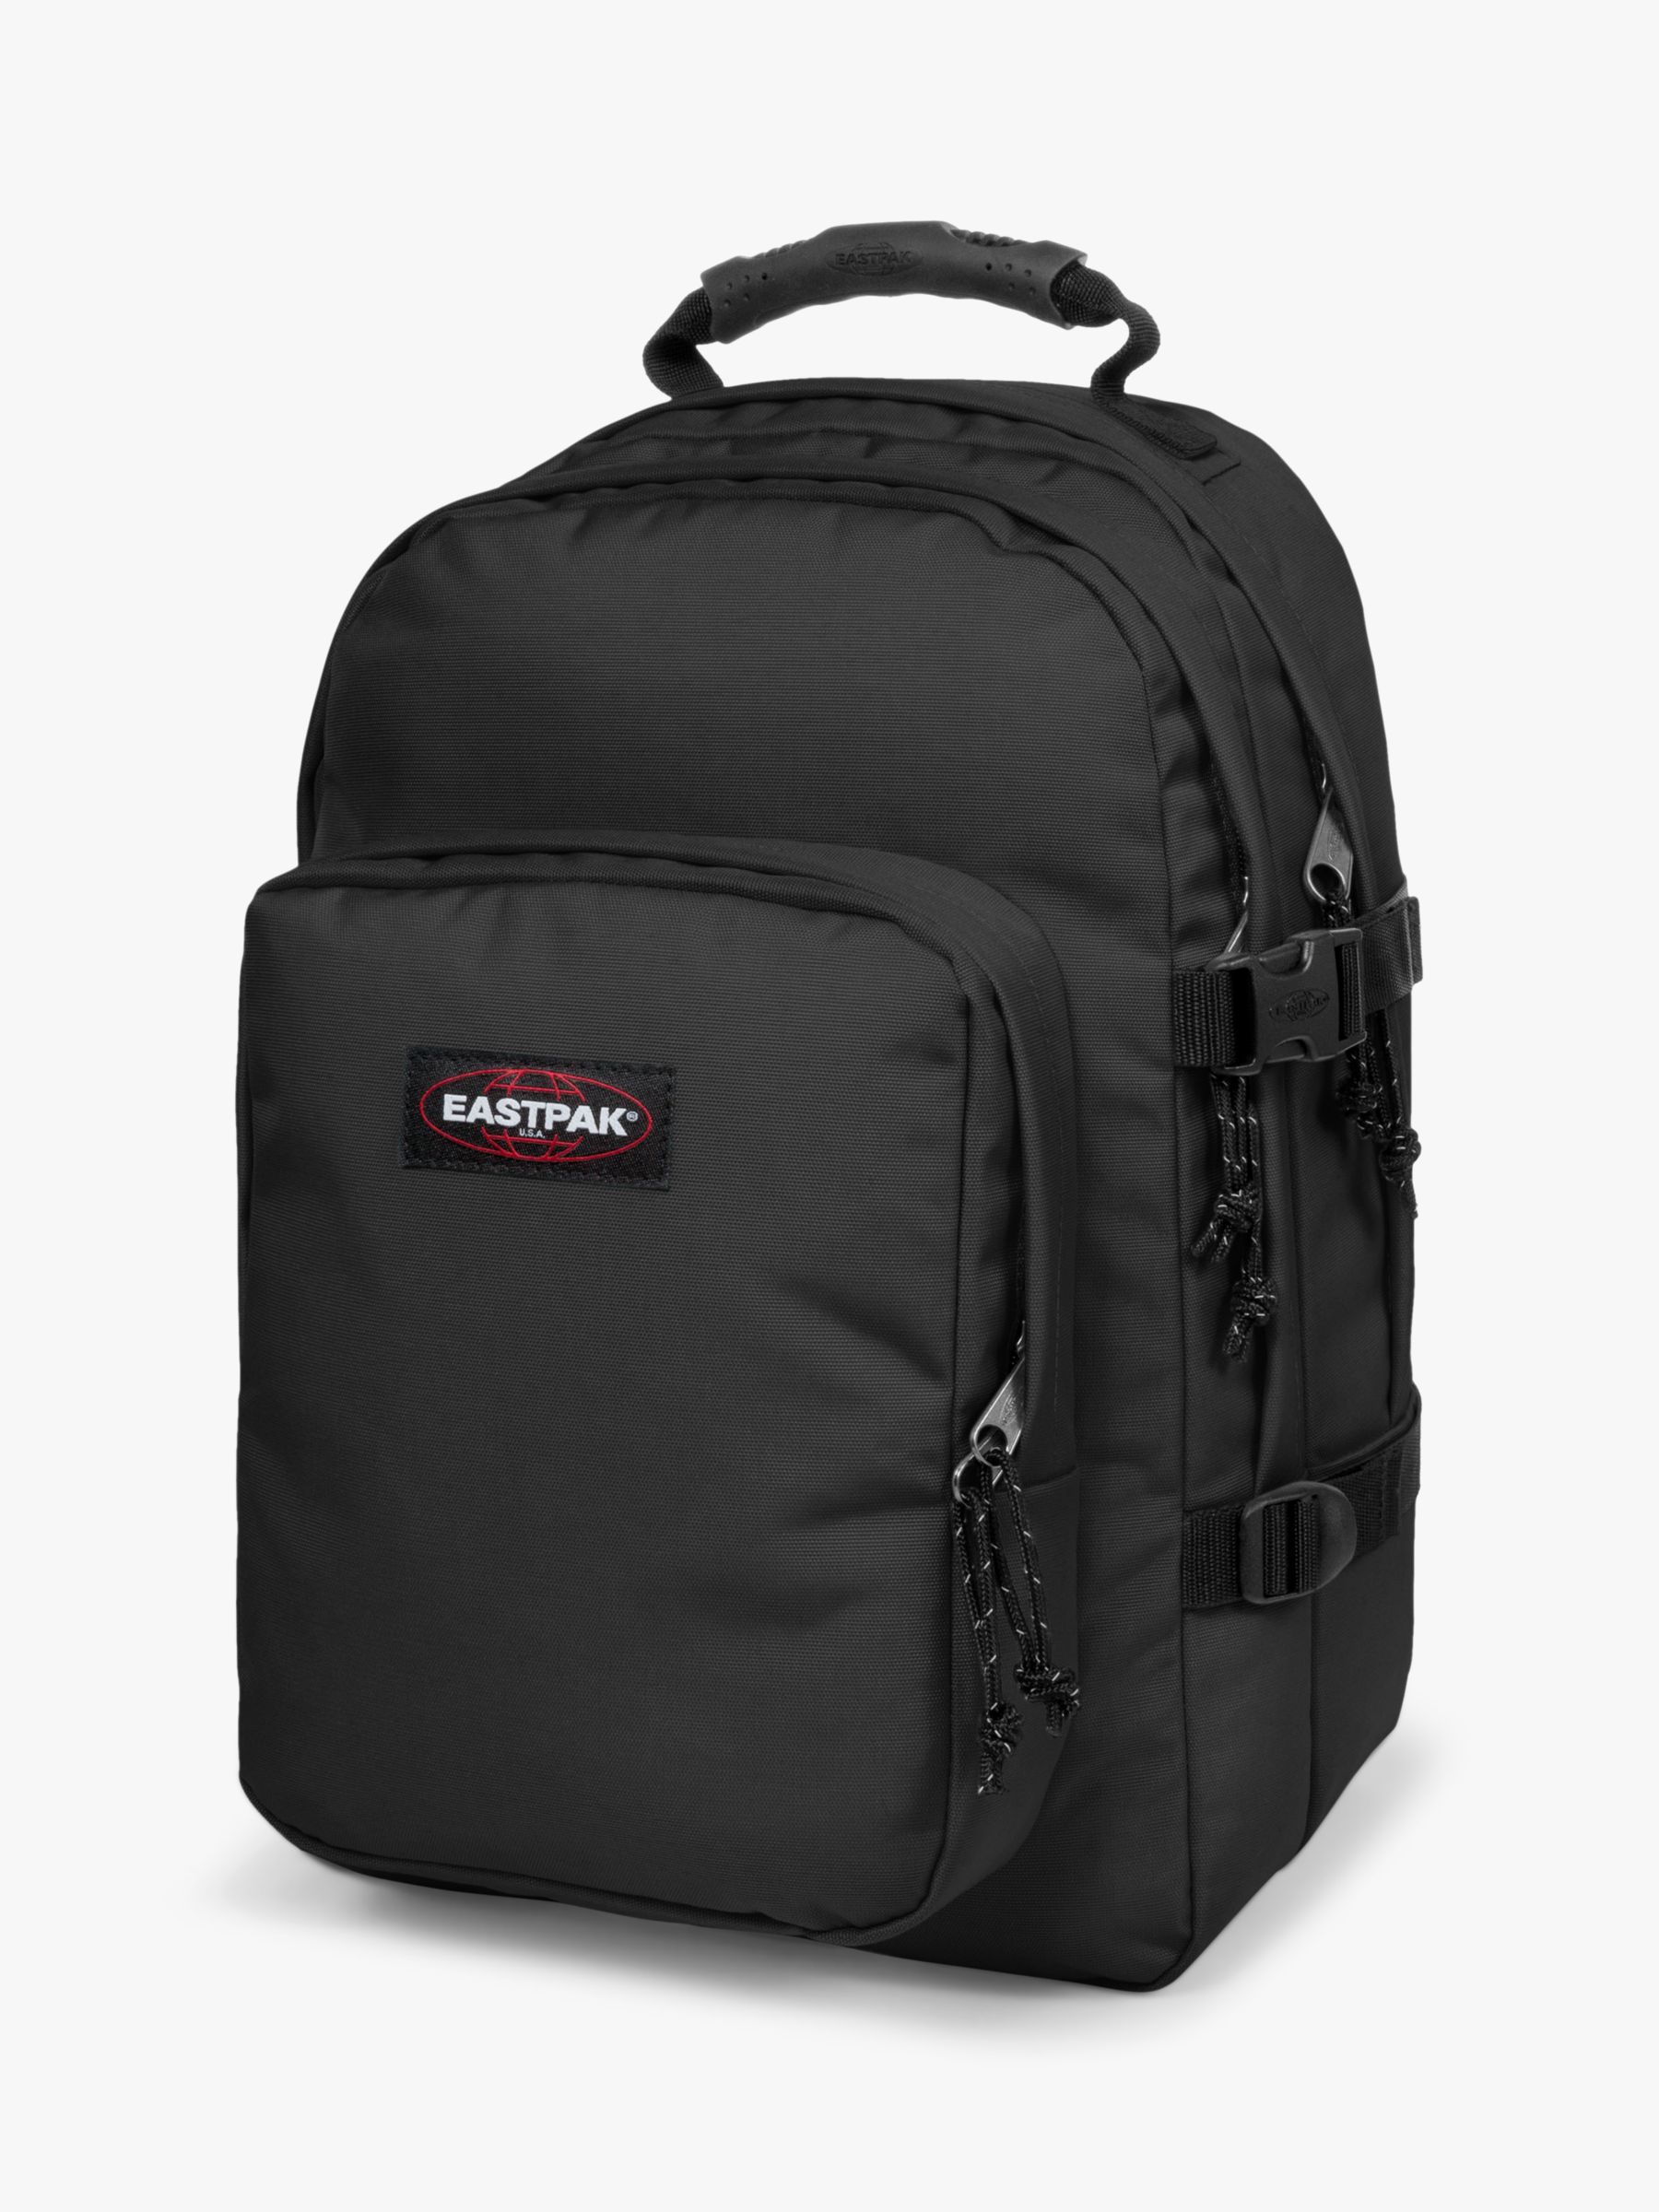 Buy Eastpak Provider 15" Laptop Backpack, Black Online at johnlewis.com